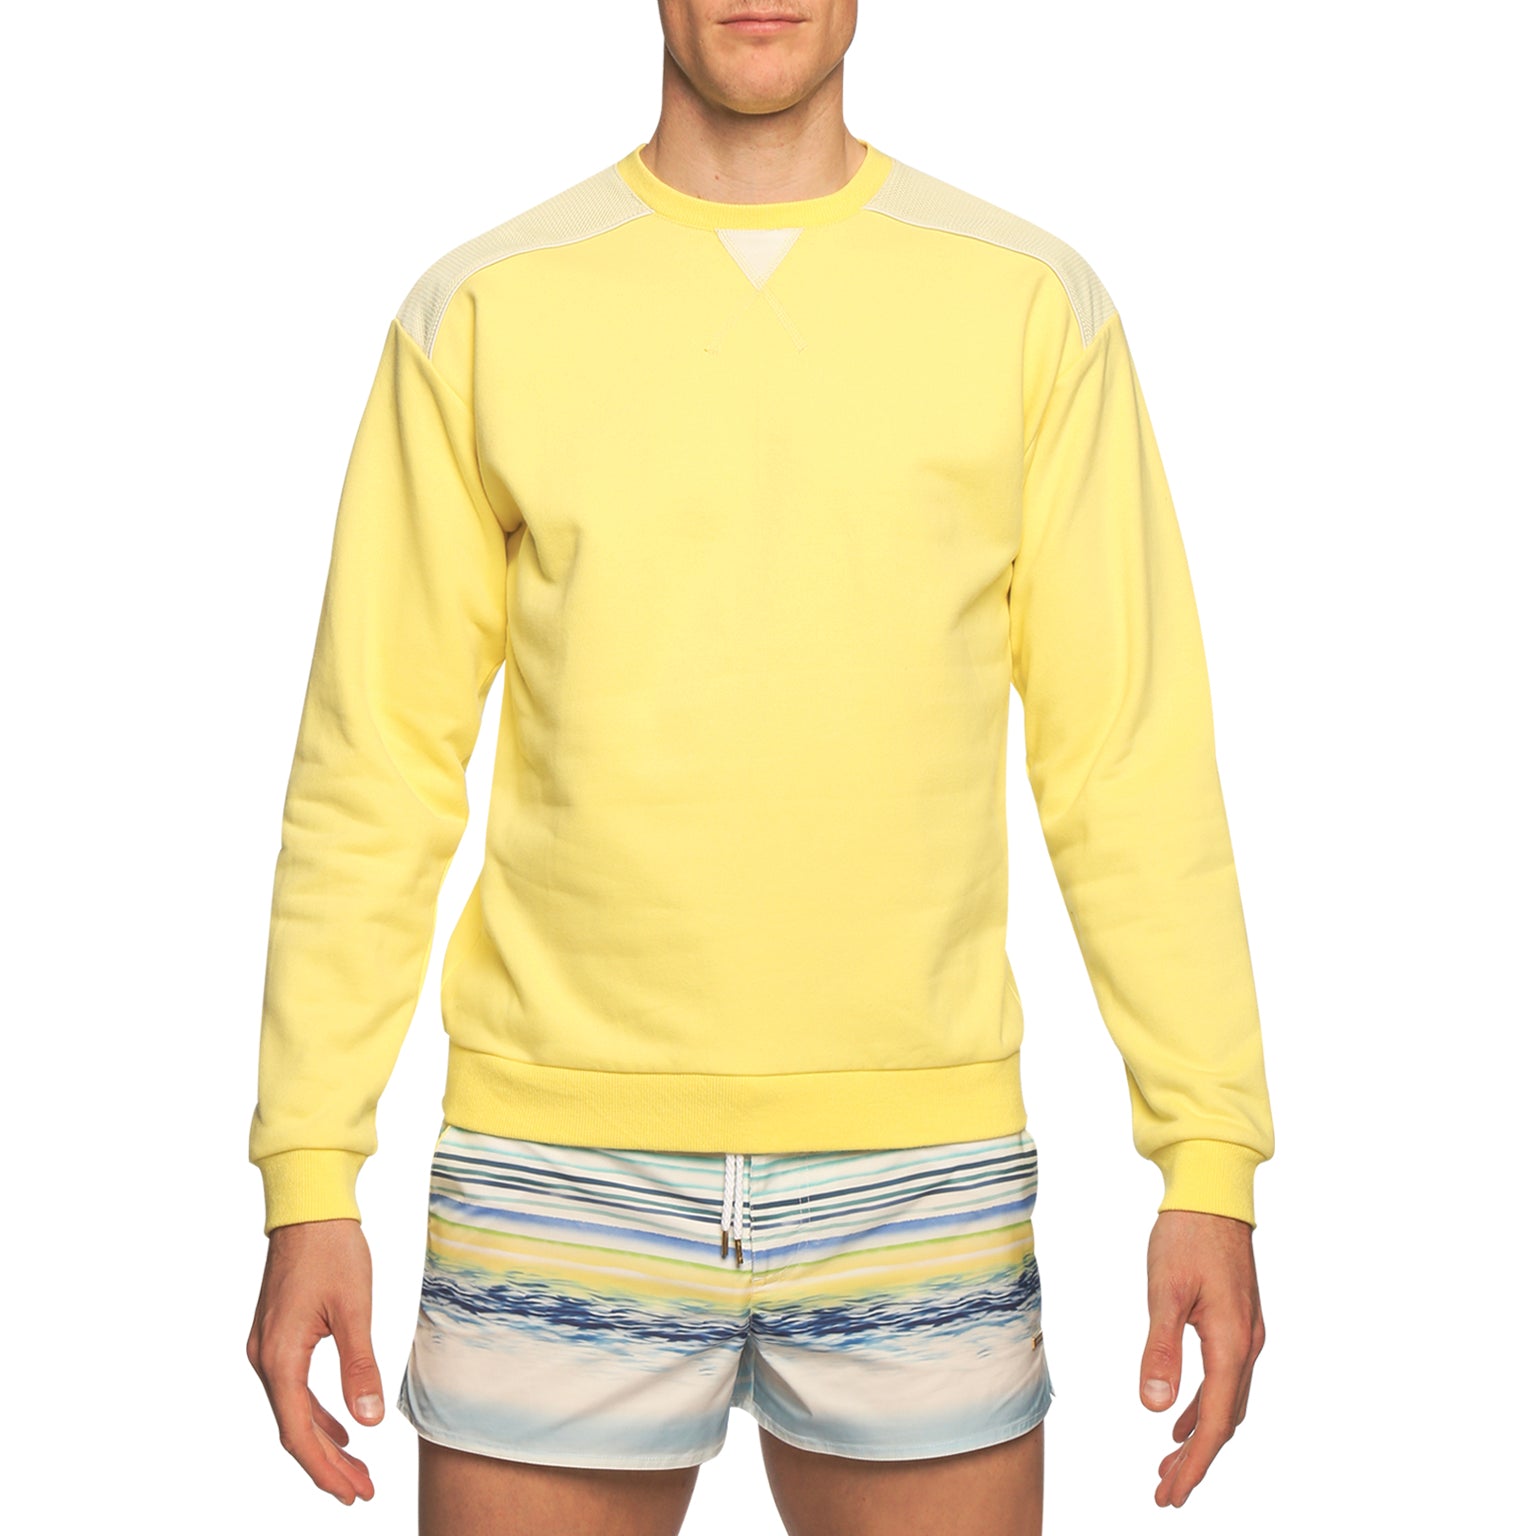 Lemon Tech Jersey Fleece Sweatshirt